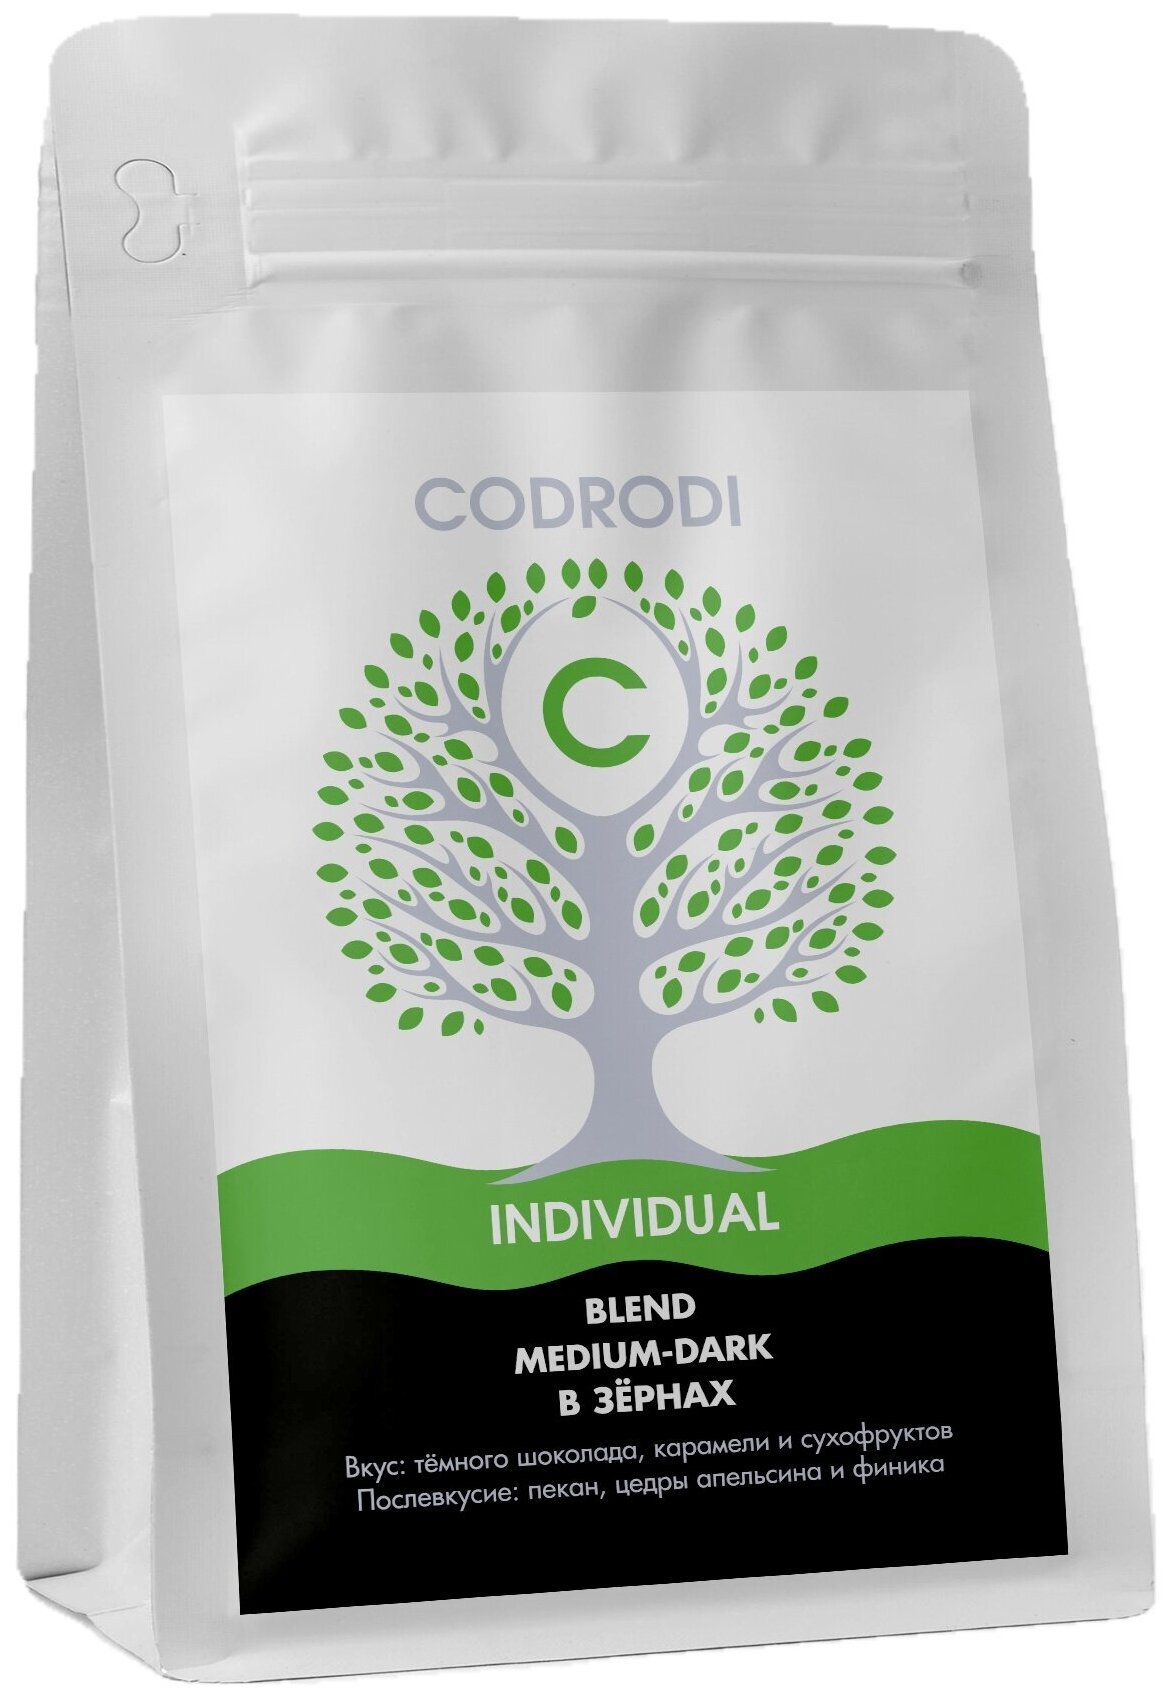 Кофе в зернах Codrodi Blend INDIVIDUAL (Бразилия/Колумбия/Эфиопия) 250 гр